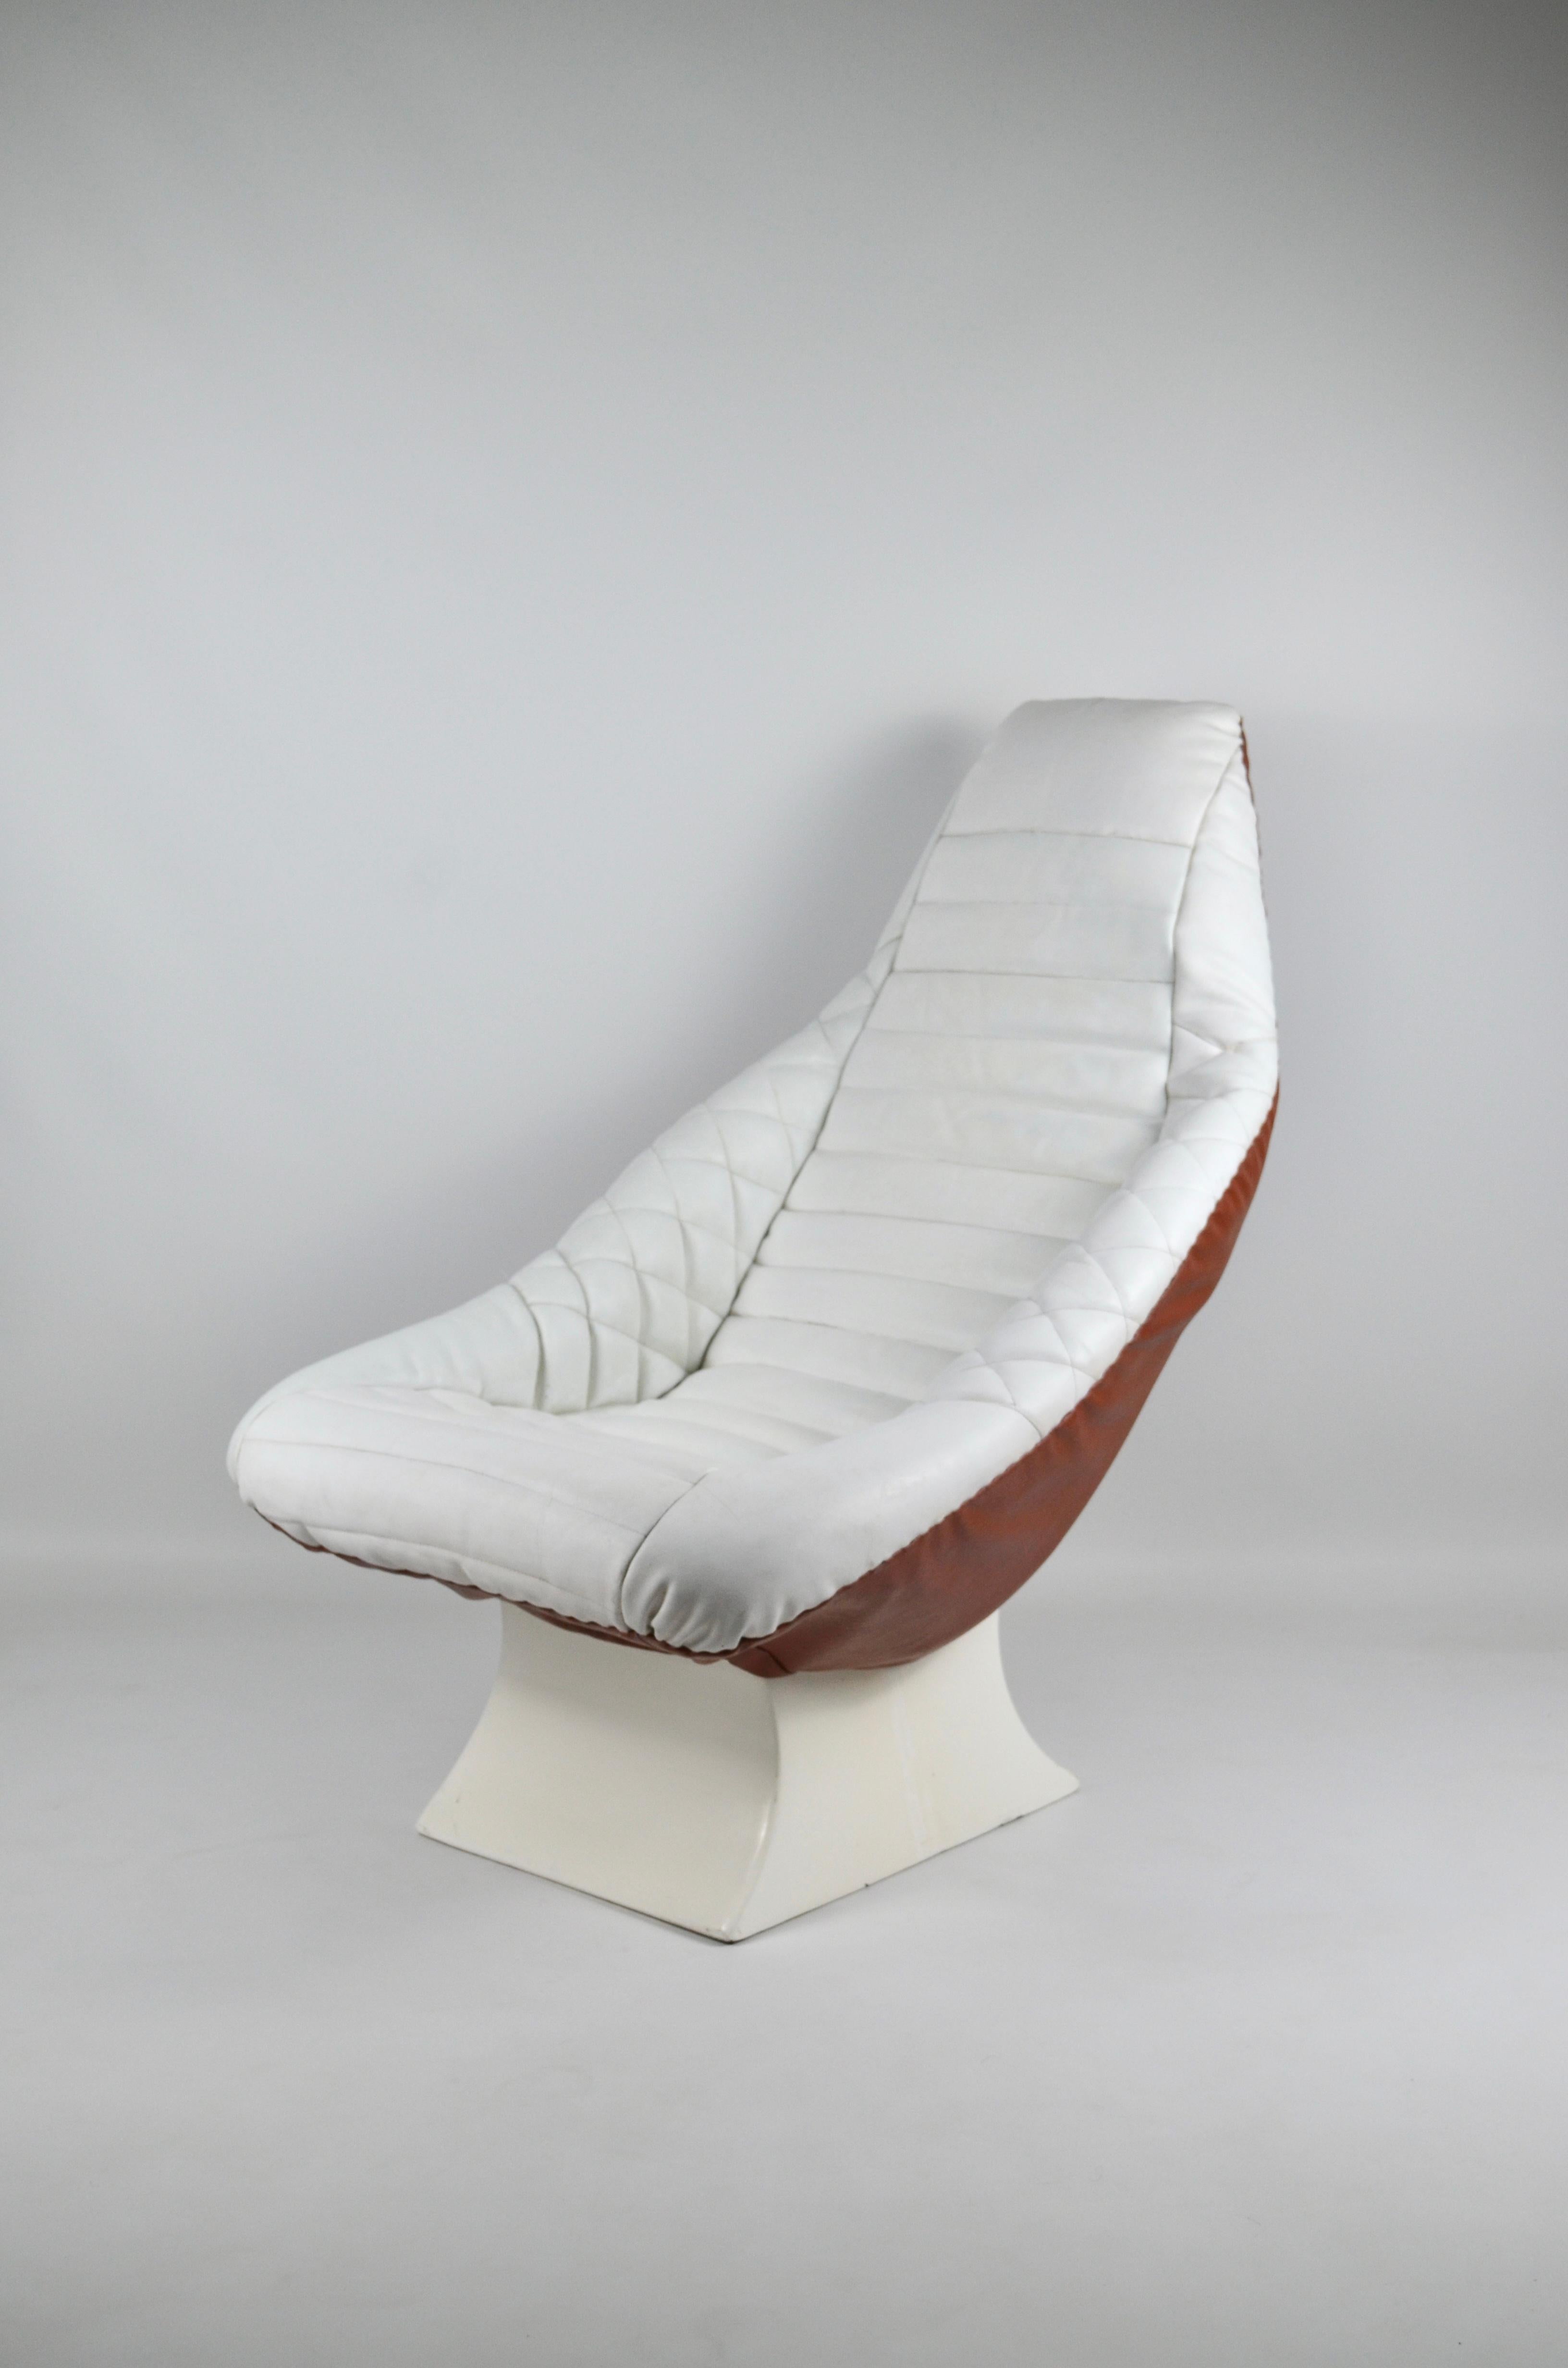 Vintage-Sessel aus Leder und Fiberglas im Space- Age-Stil, 1970er Jahre (Ende des 20. Jahrhunderts)